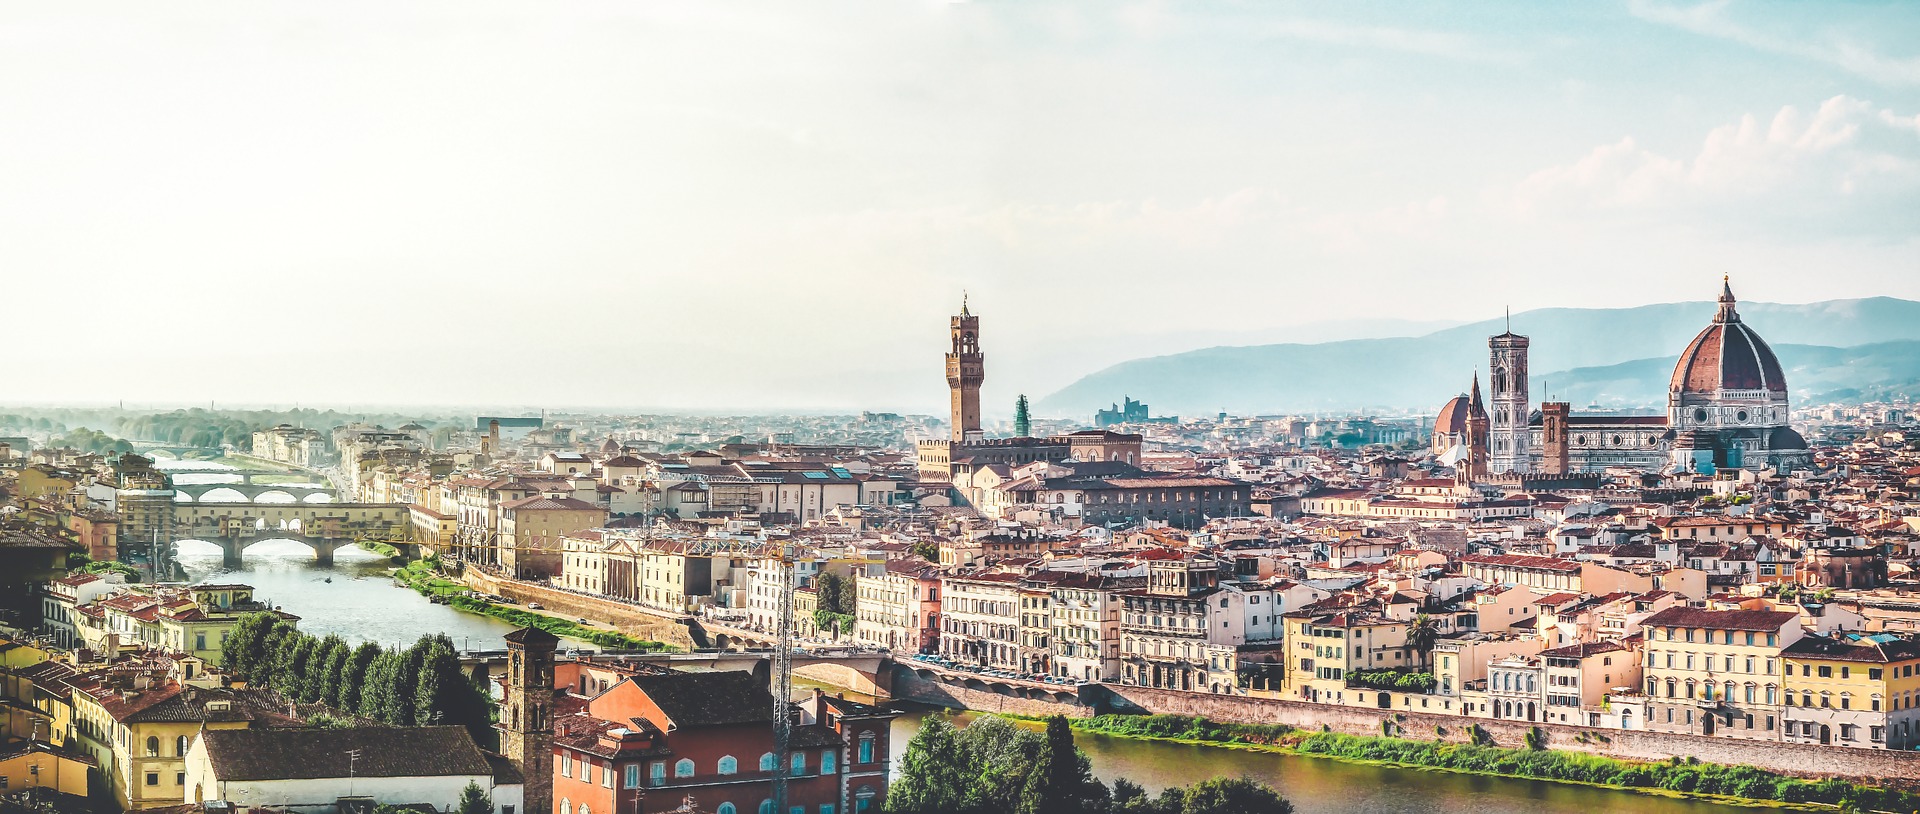 Firenze|フィレンツェ